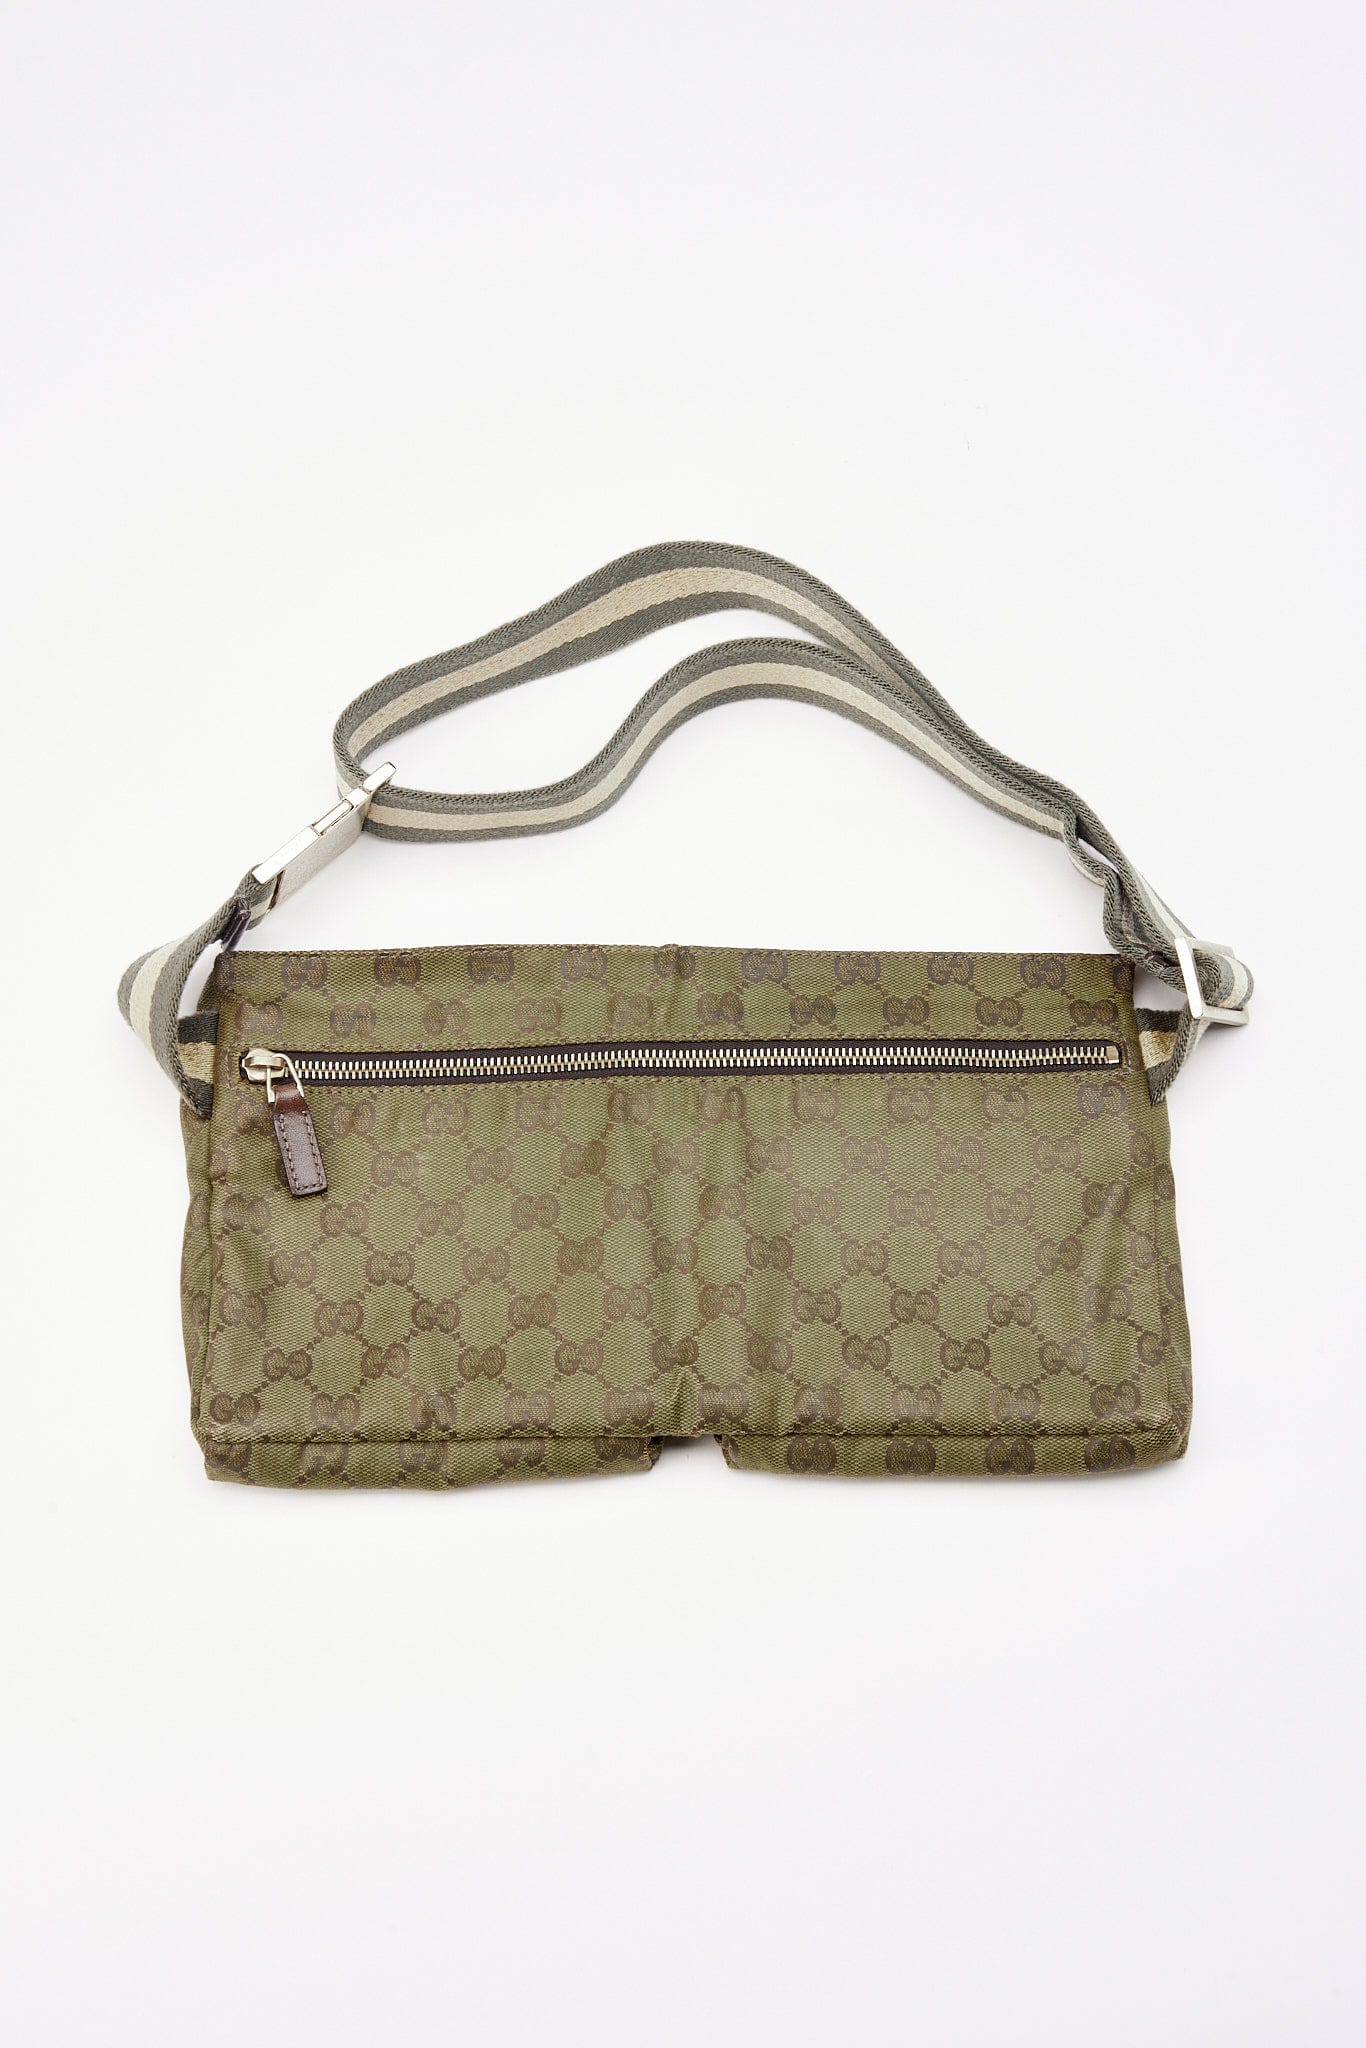 Vintage Gucci Green GG Canvas Belt or Sling Bag